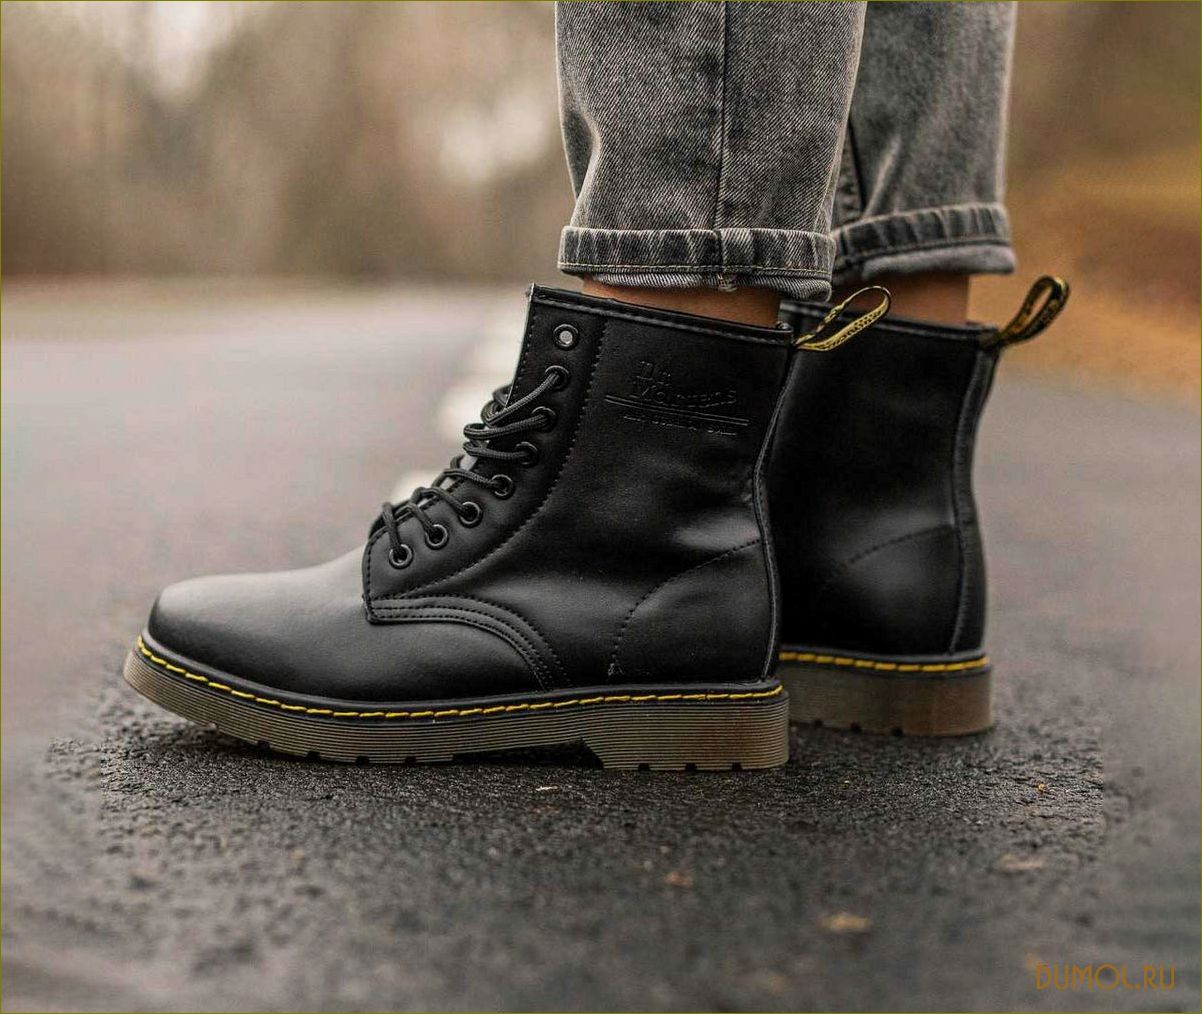 Мужские ботинки Dr. Martens — уникальный стиль, непревзойденное качество и комфорт на каждый день